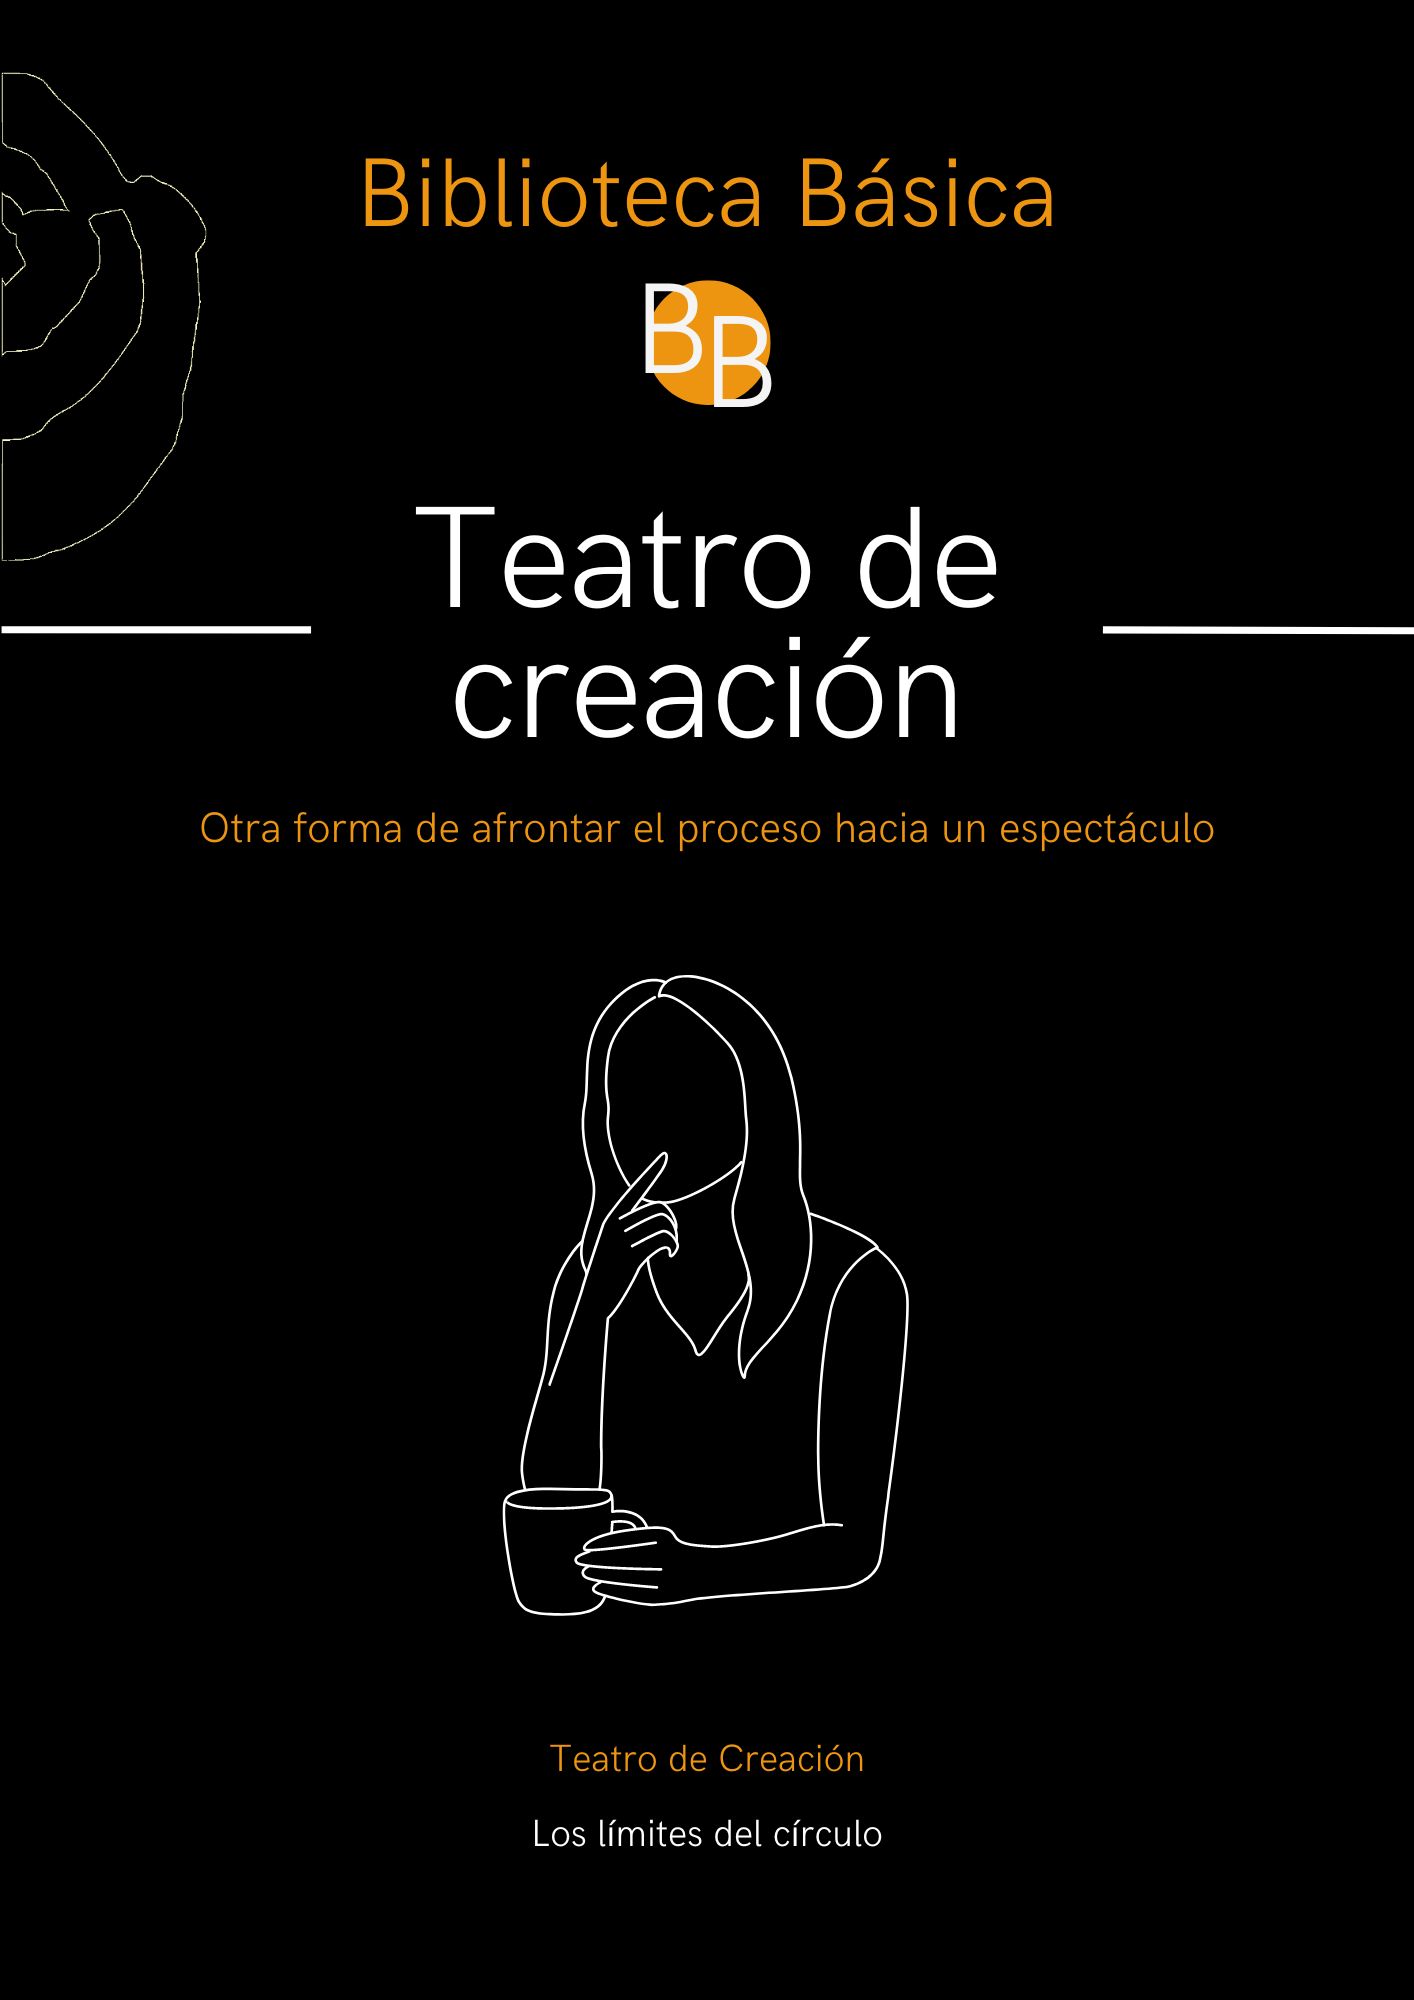 BB TEATRO DE CREACIÓN